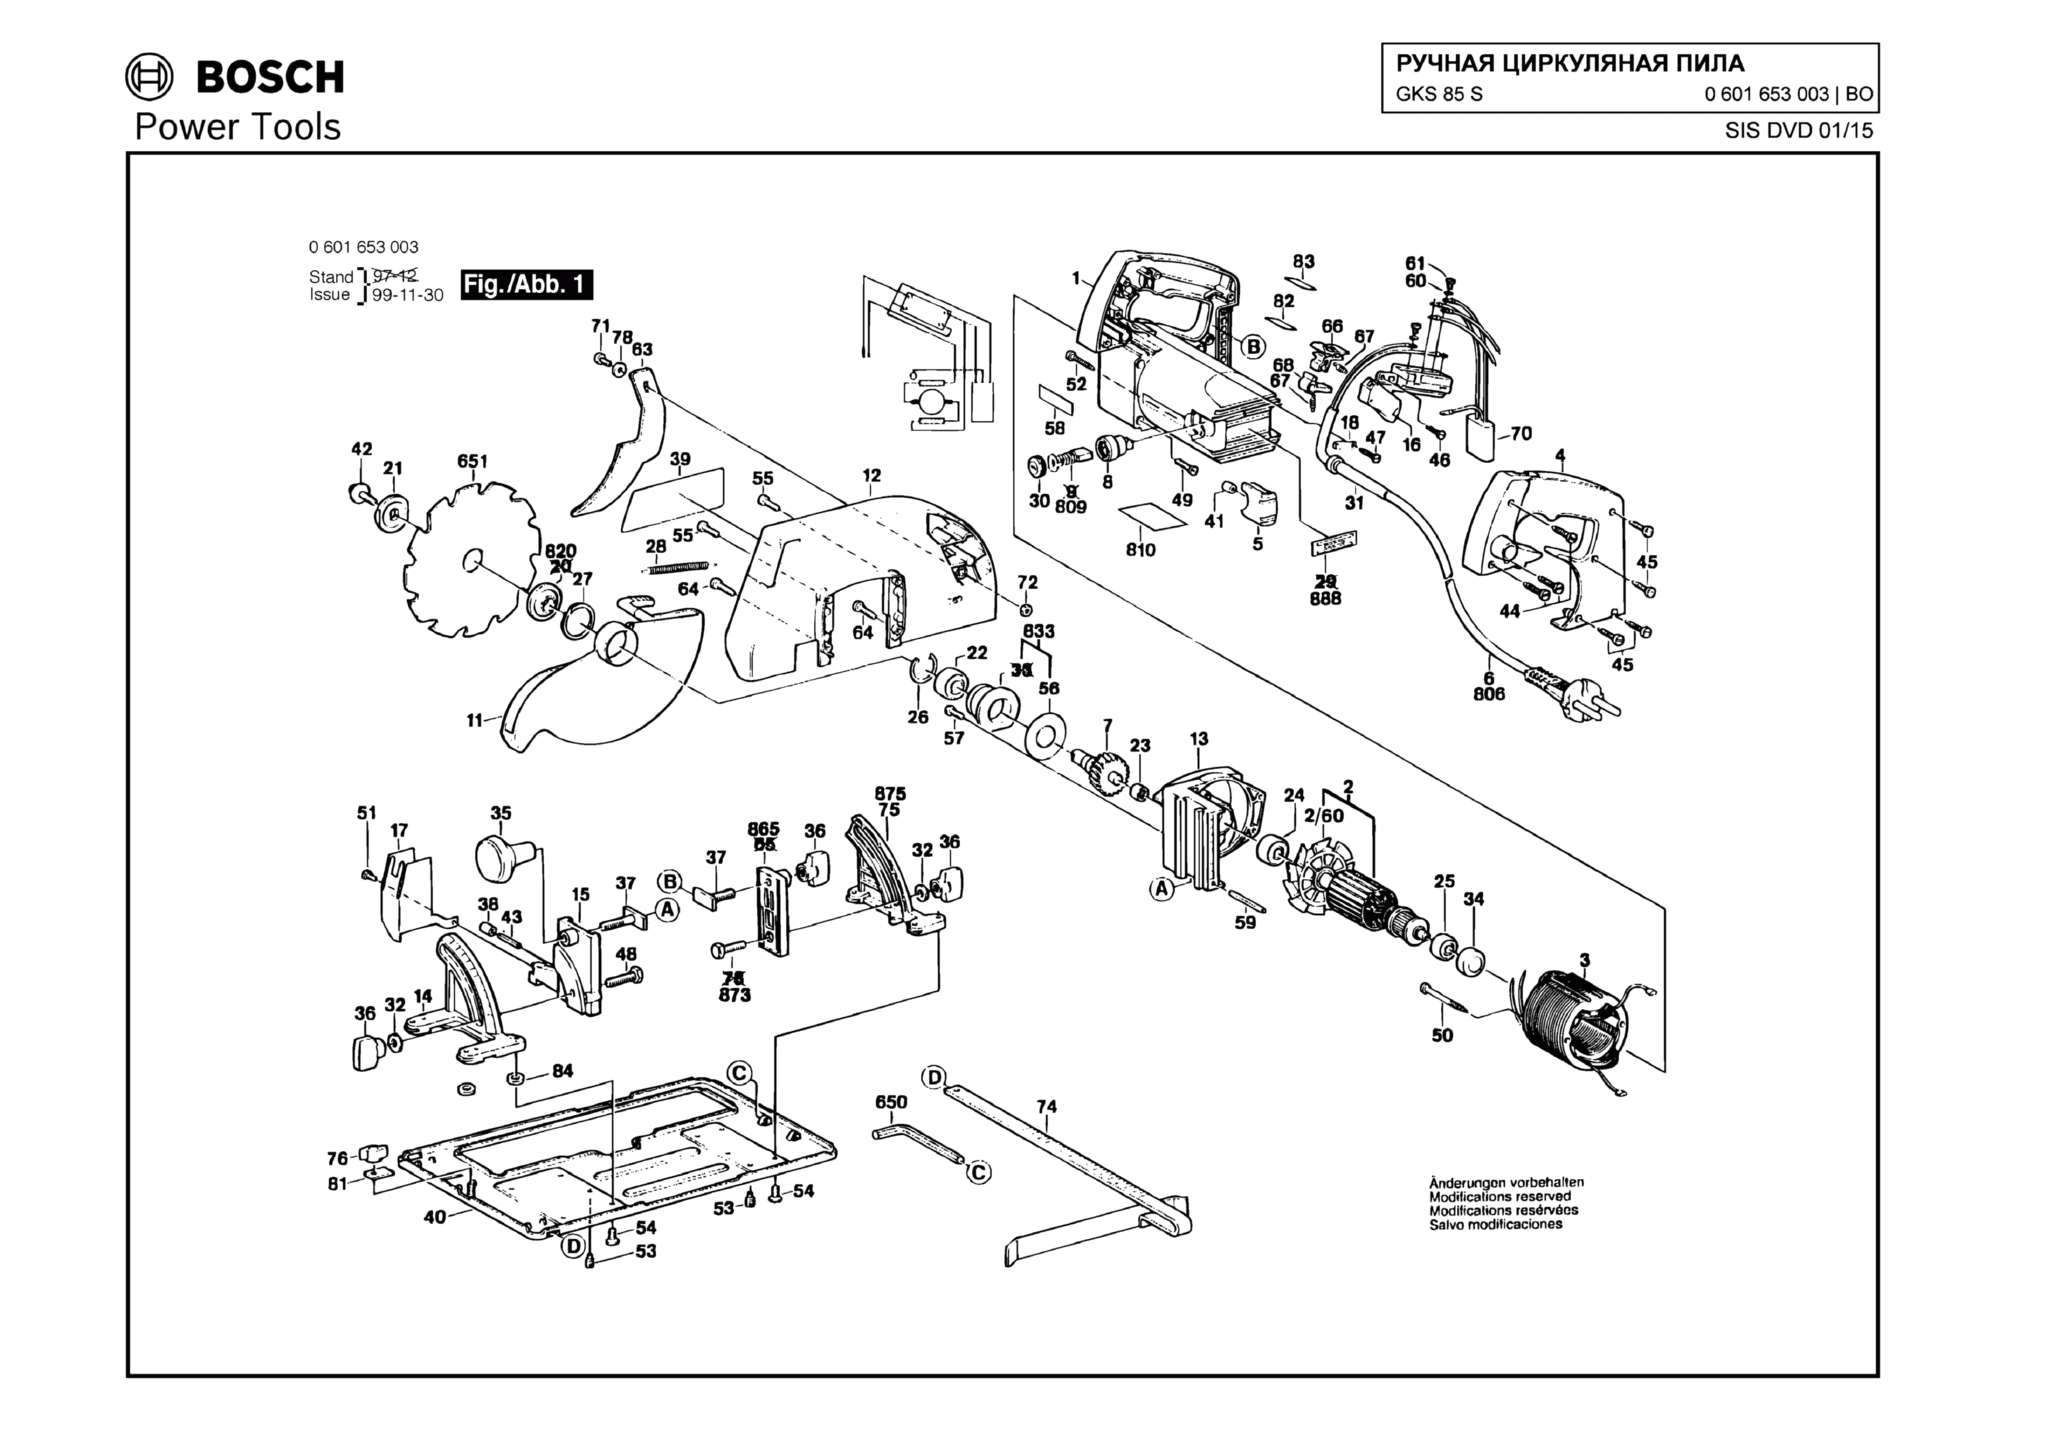 Запчасти, схема и деталировка Bosch GKS 85 S (ТИП 0601653003)